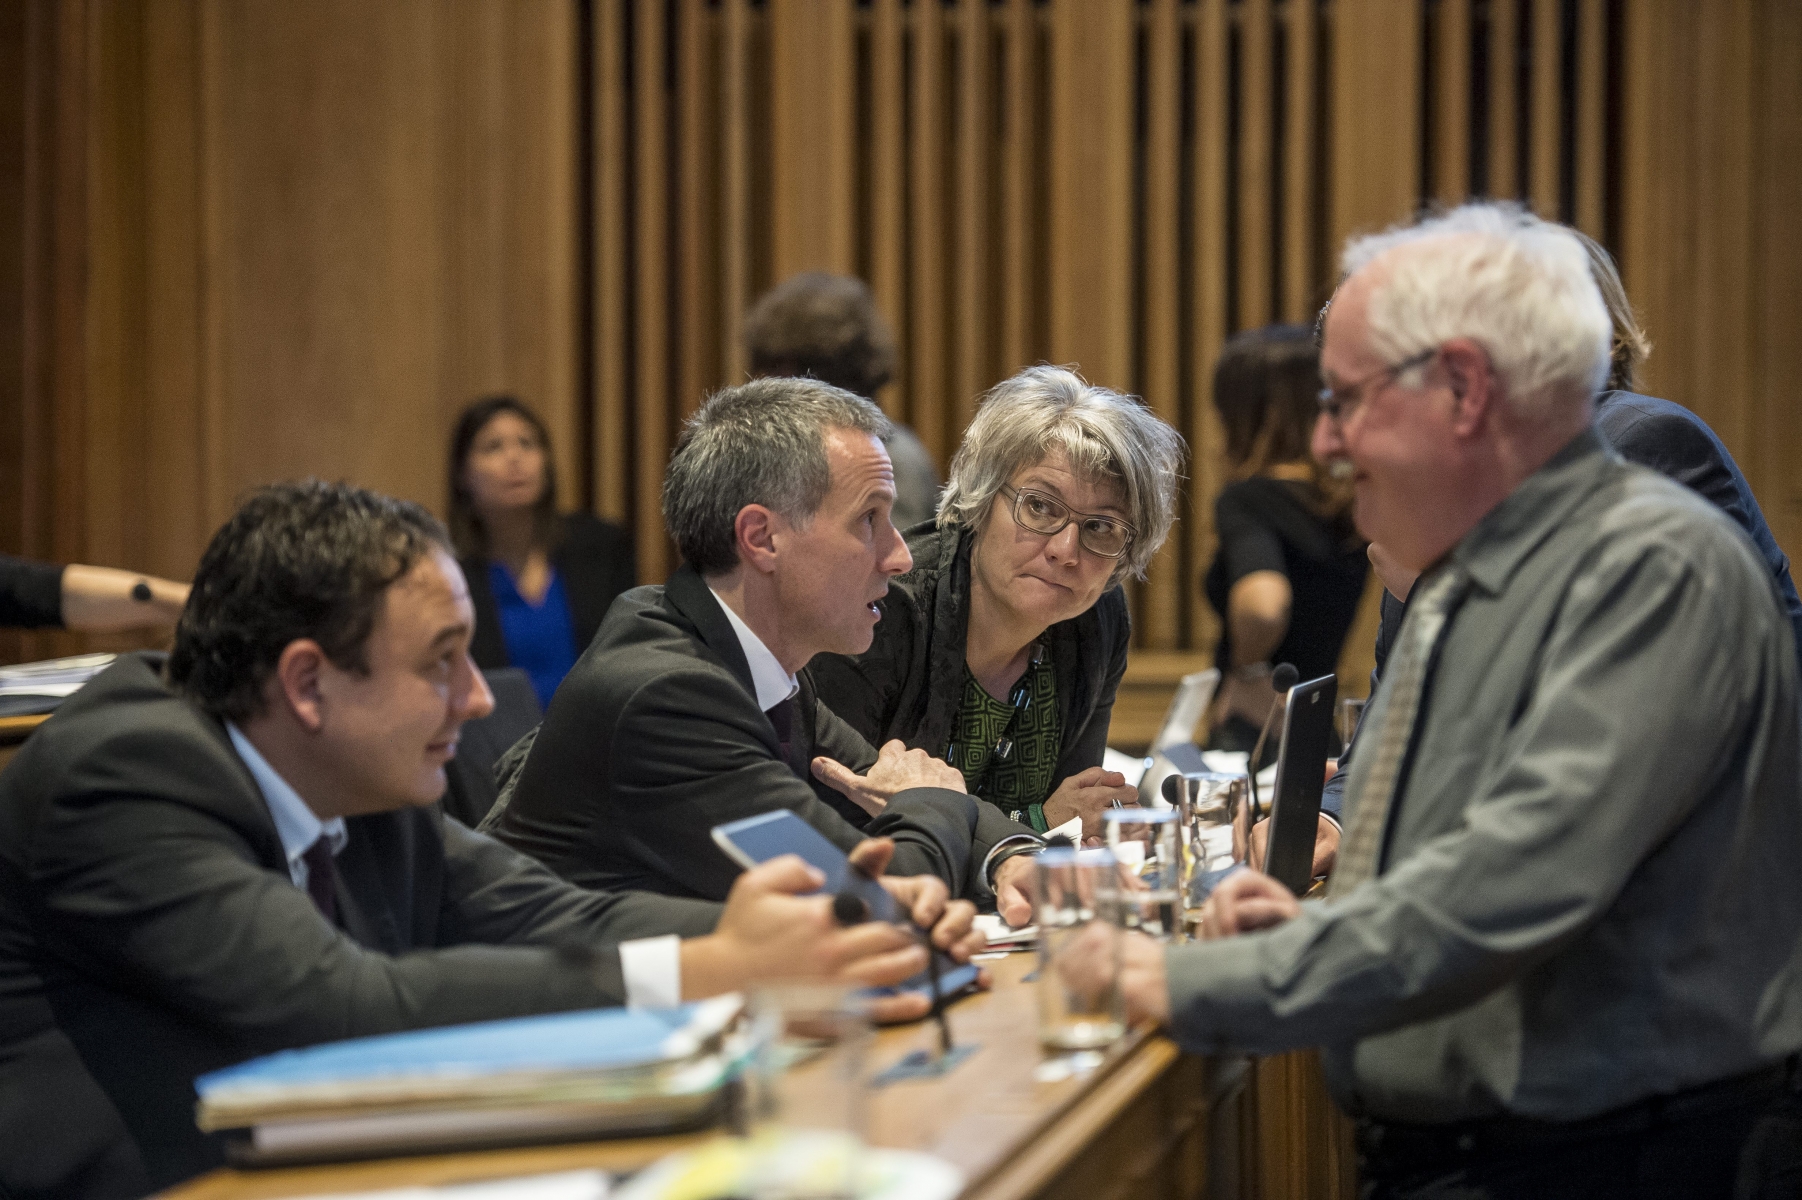 Les conseillers d'Etat Jean-Nat Karakash, Laurent Kurth et Monika Maire-Hefti lors du débat sur le budget au Grand Conseil, en décembre dernier (en discussion ici avec le député UDC Walter Willener).